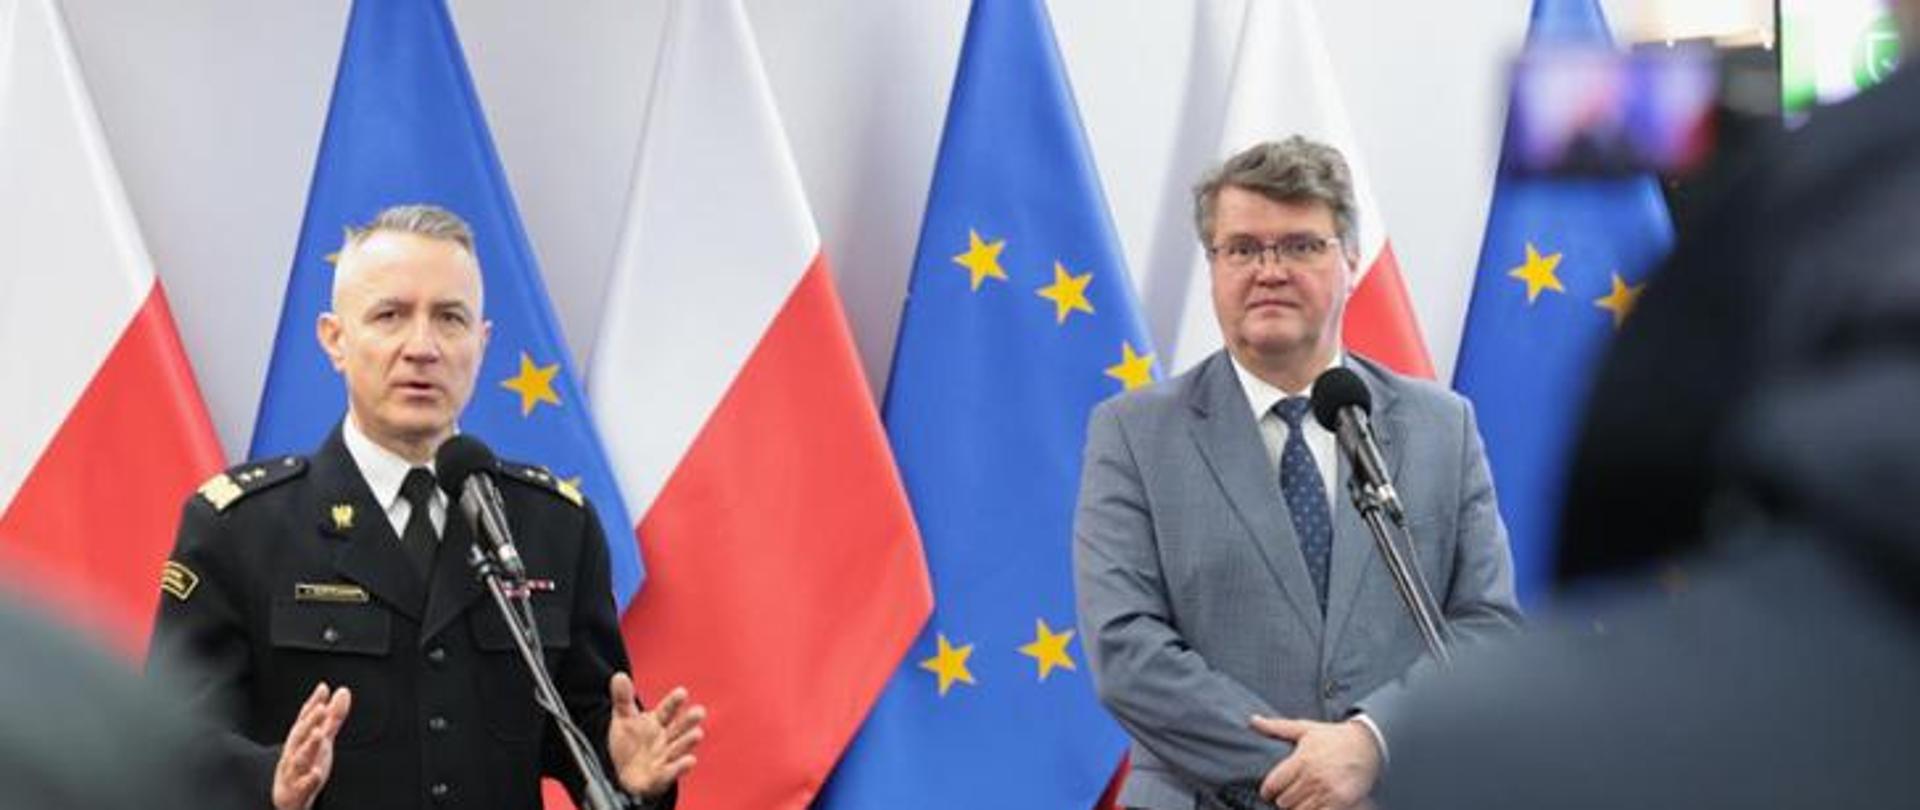 Zdjęcie przedstawia przemówienie wiceministra Macieja Wąsika oraz gen. brygadiera Andrzeja Bartkowiaka komendanta głównego PSP podczas konferencji prasowej dotyczącej inwentaryzacji budynków i obiektów budowlanych. W tle widoczne są Flagi Polski oraz Unii Europejskiej.